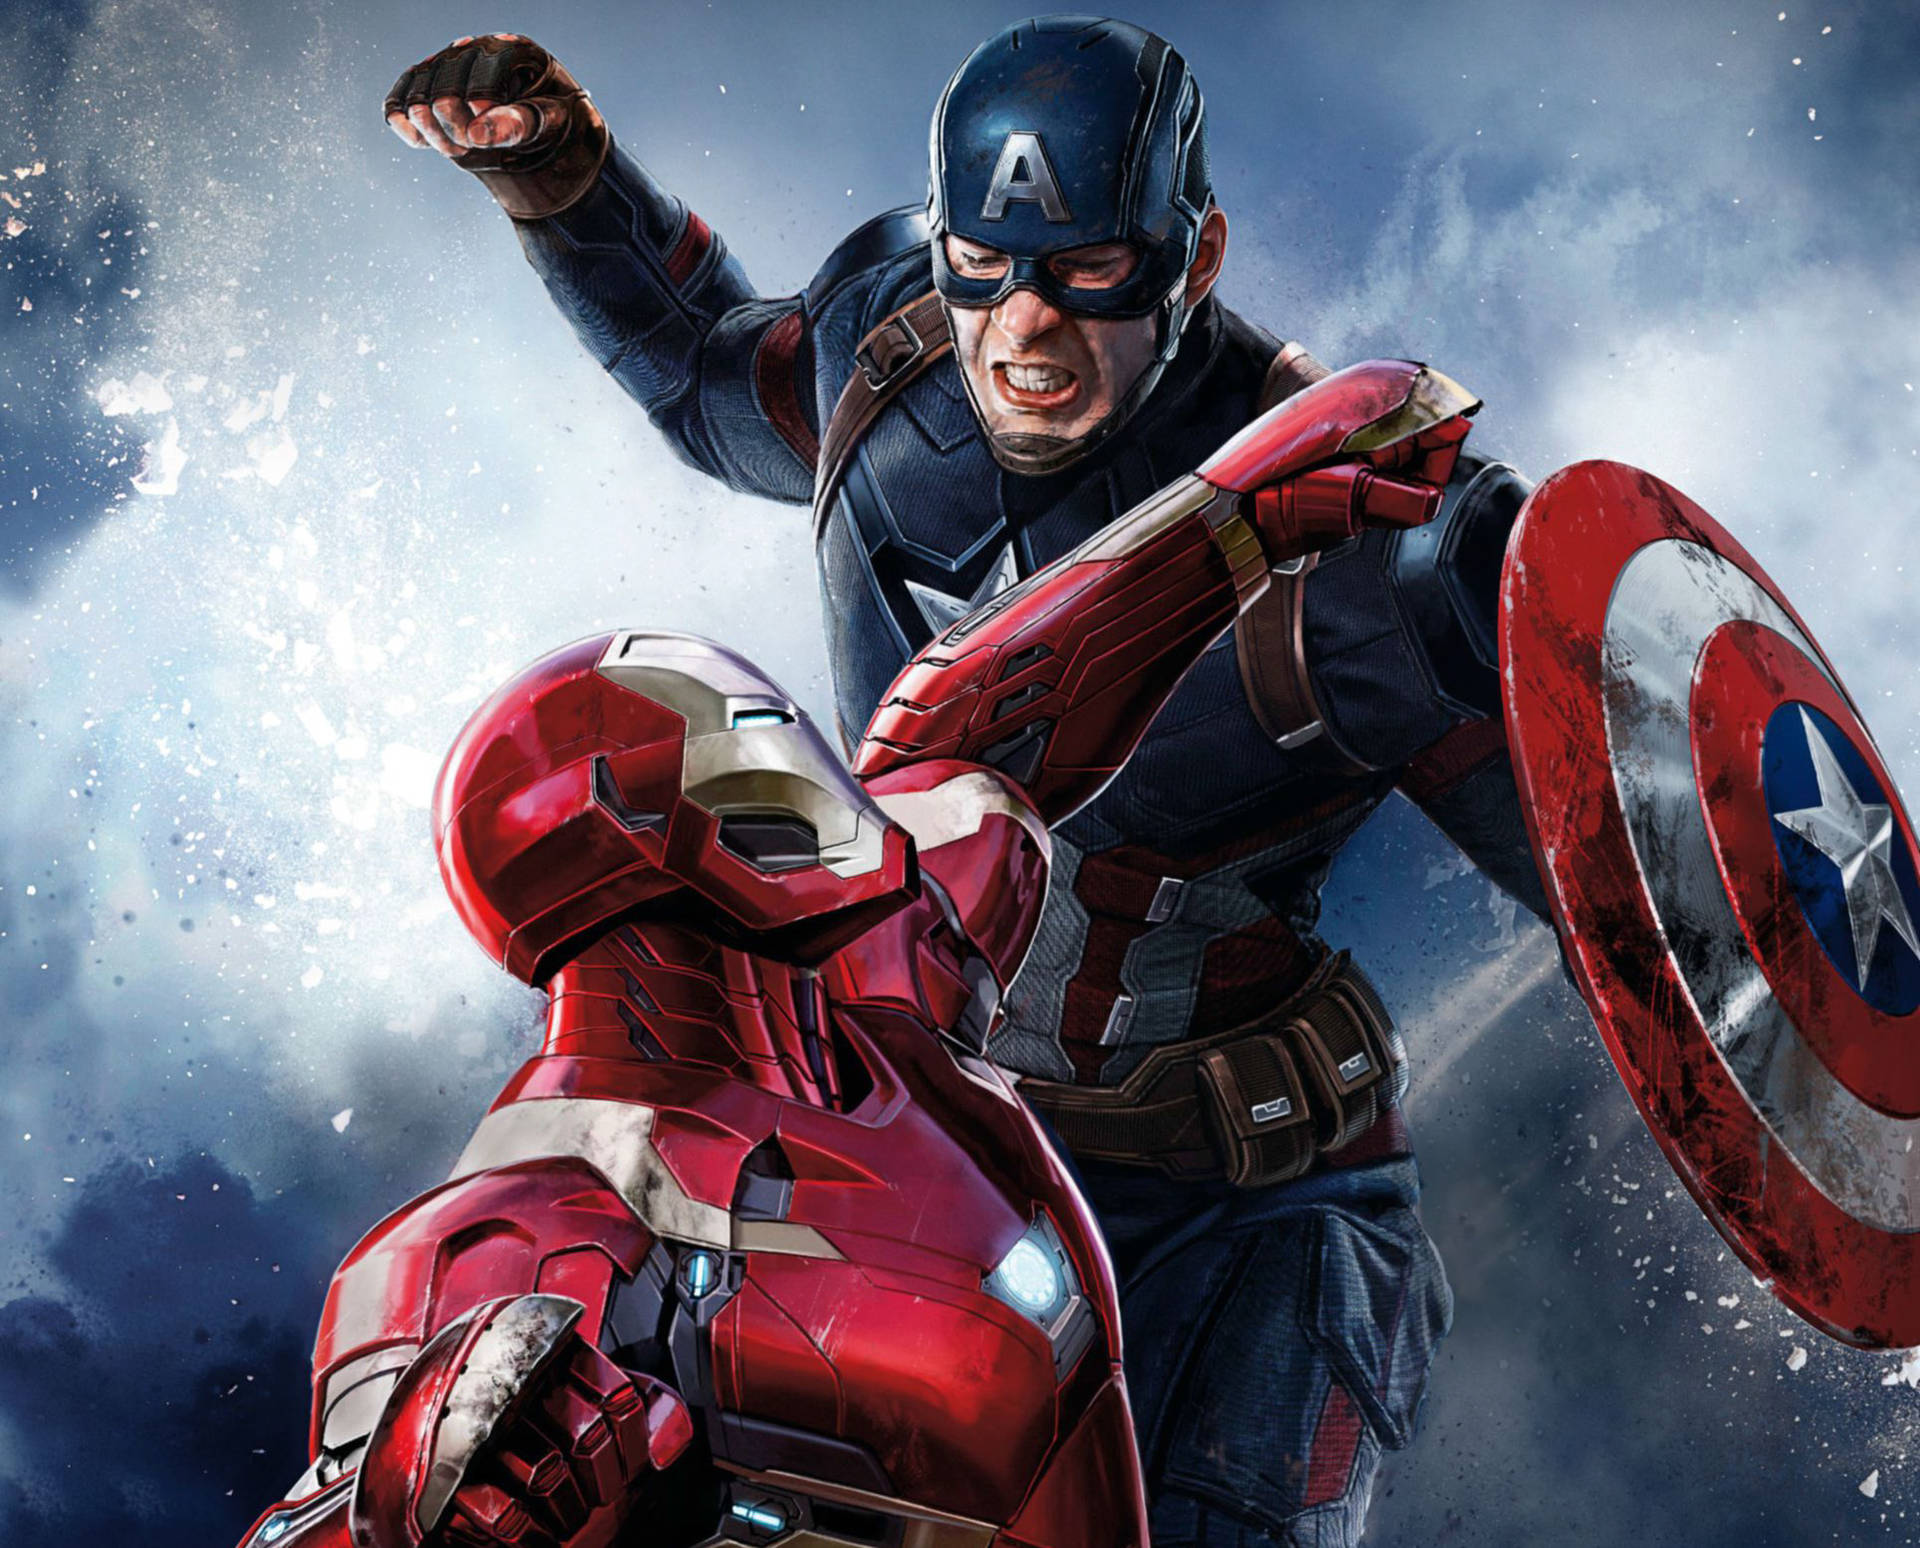 Iron Man Punching Captain America Civil War